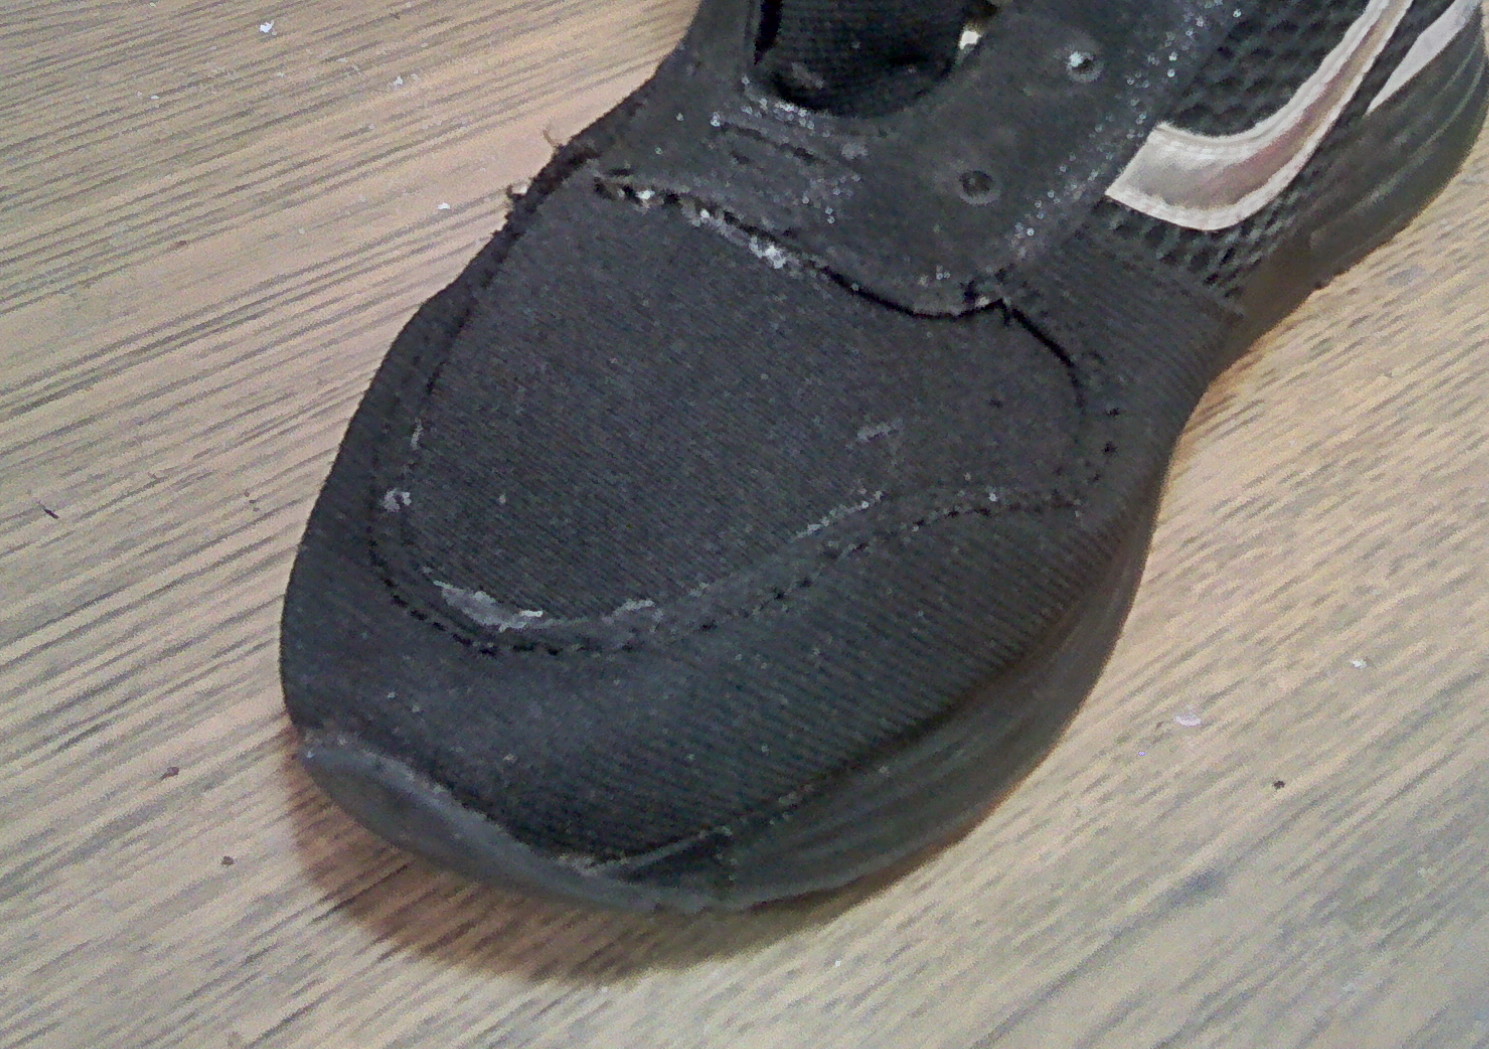 Обувь ремонте кроссовки. Порванные кроссовки. Кроссовки ремонте. Сетка на кроссовках у подошвы порвалась. Протираются кроссовки на большом пальце ноги.